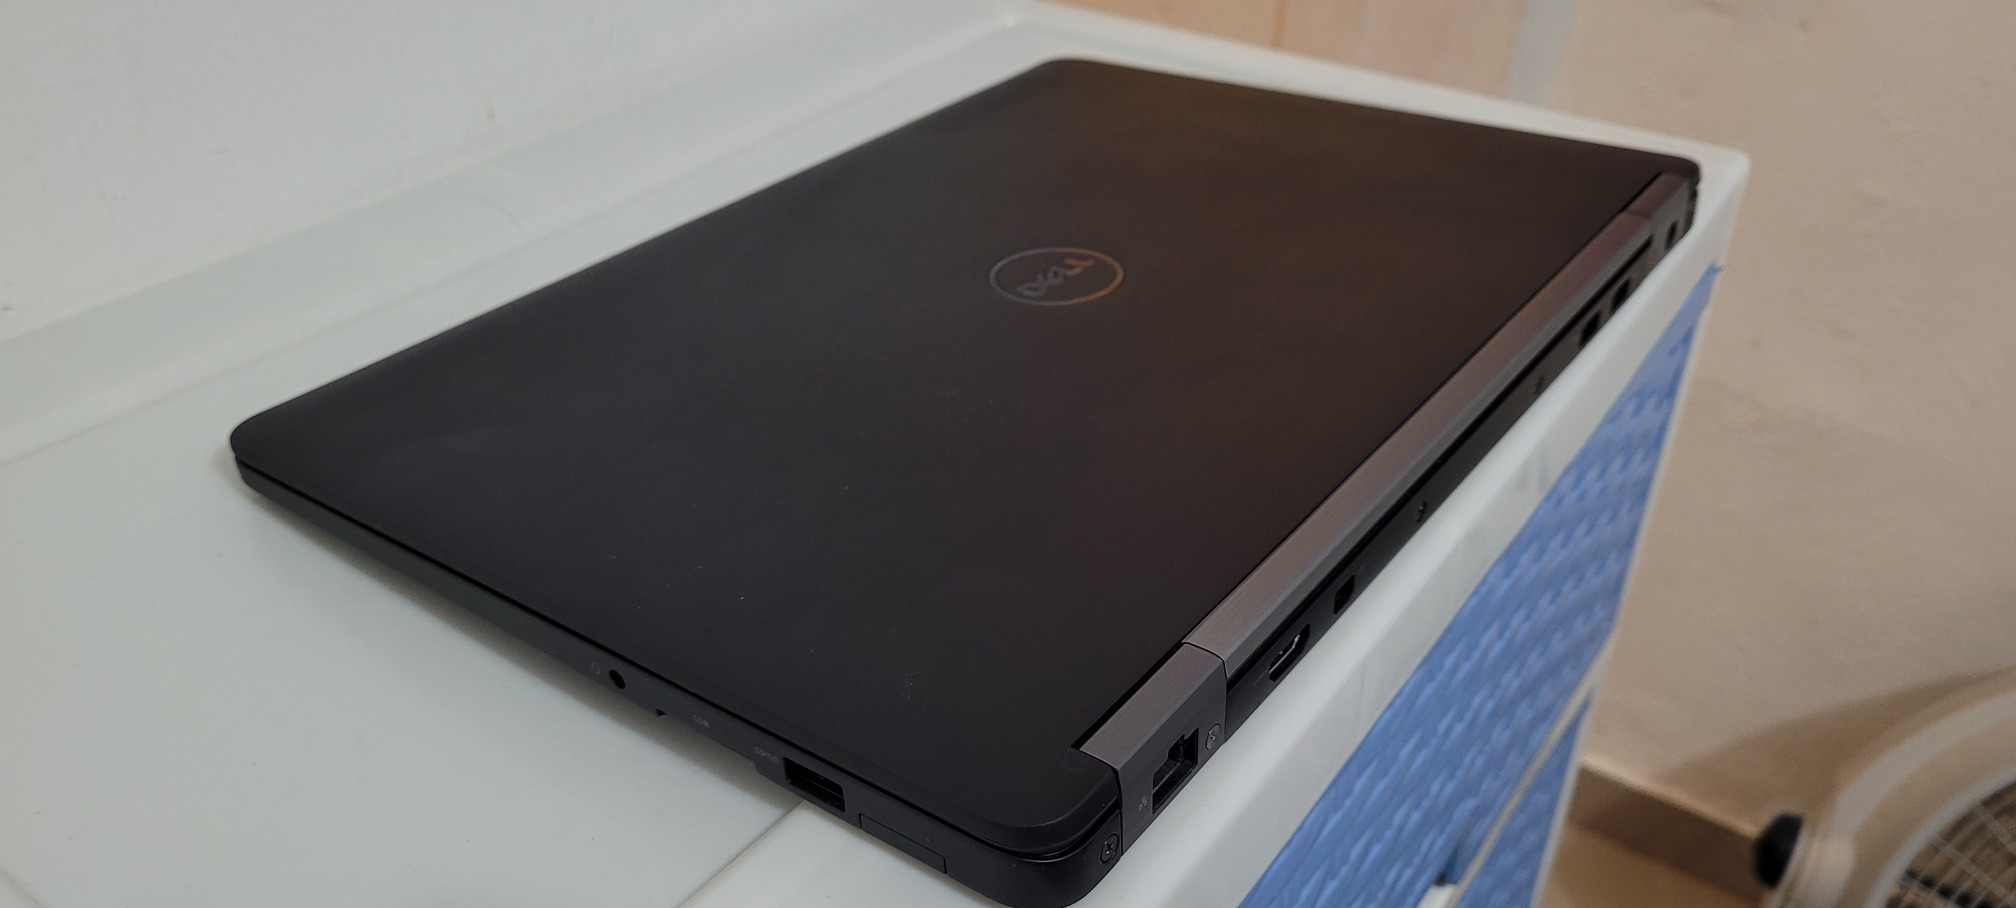 computadoras y laptops - Dell 7490 Ultra Slim 14 Pulg Core i7 8va Gen Ram 16gb Disco 512gb SSD Solido 2